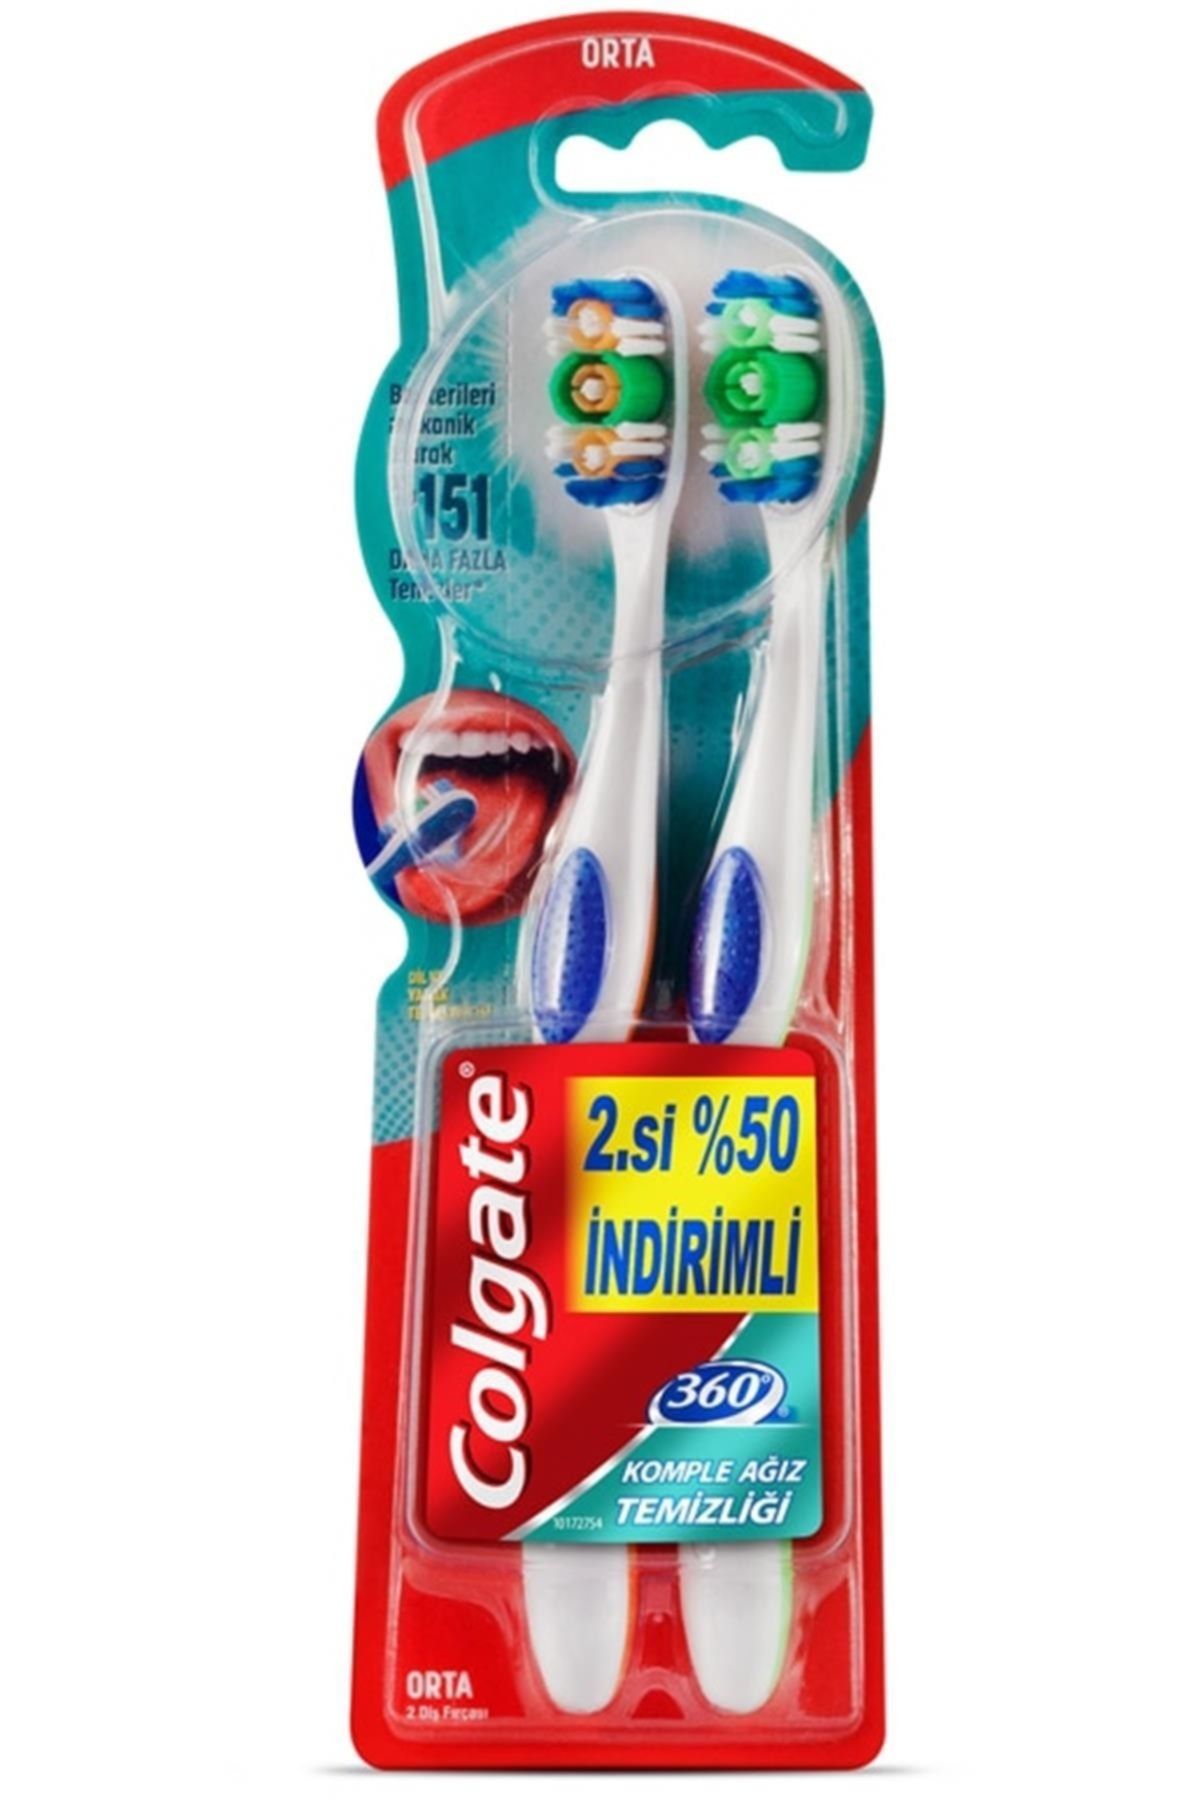 Colgate Marka: 360 Komple Ağız Temizliği Orta Diş Fırçası 1+1 Kategori: Makyaj Fırçası